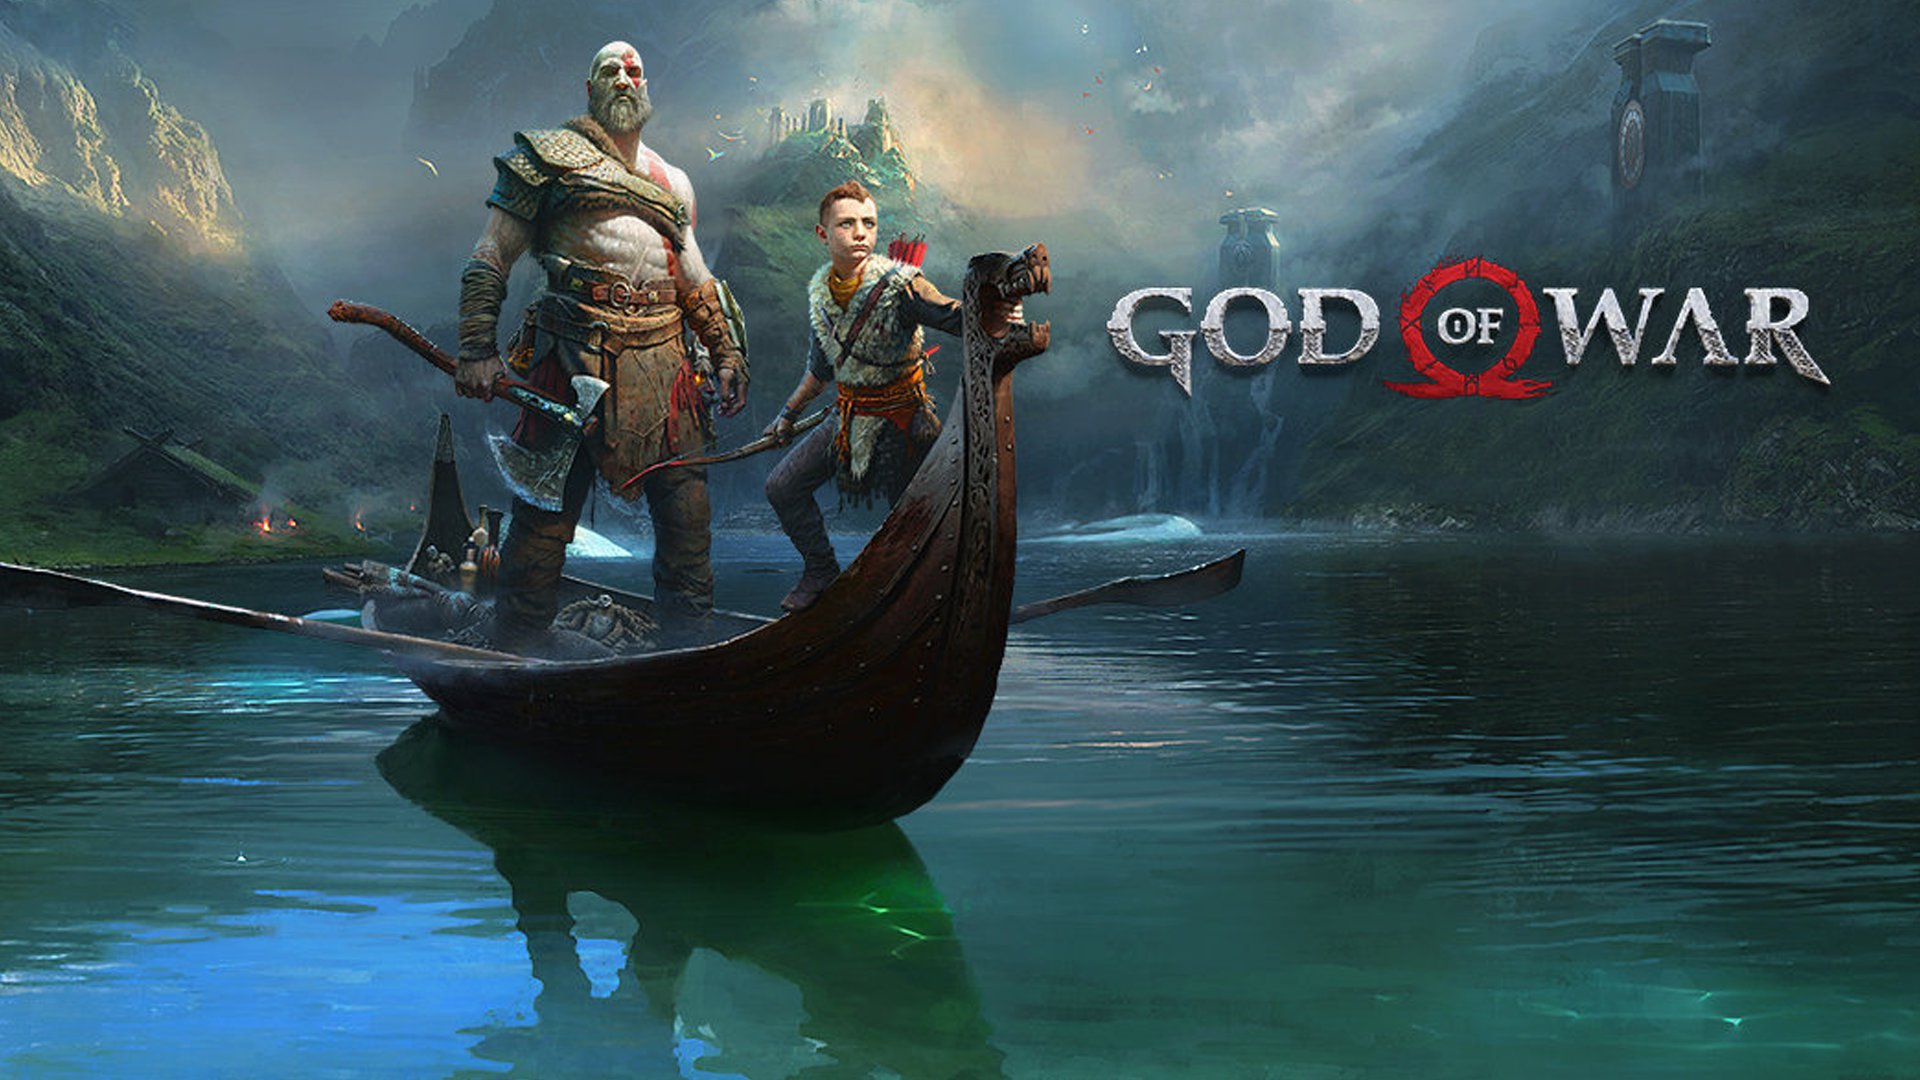 Kratos Atreus God Of War Wallpapers Download Free - God Of War 4 Wallpaper Full Hd - HD Wallpaper 